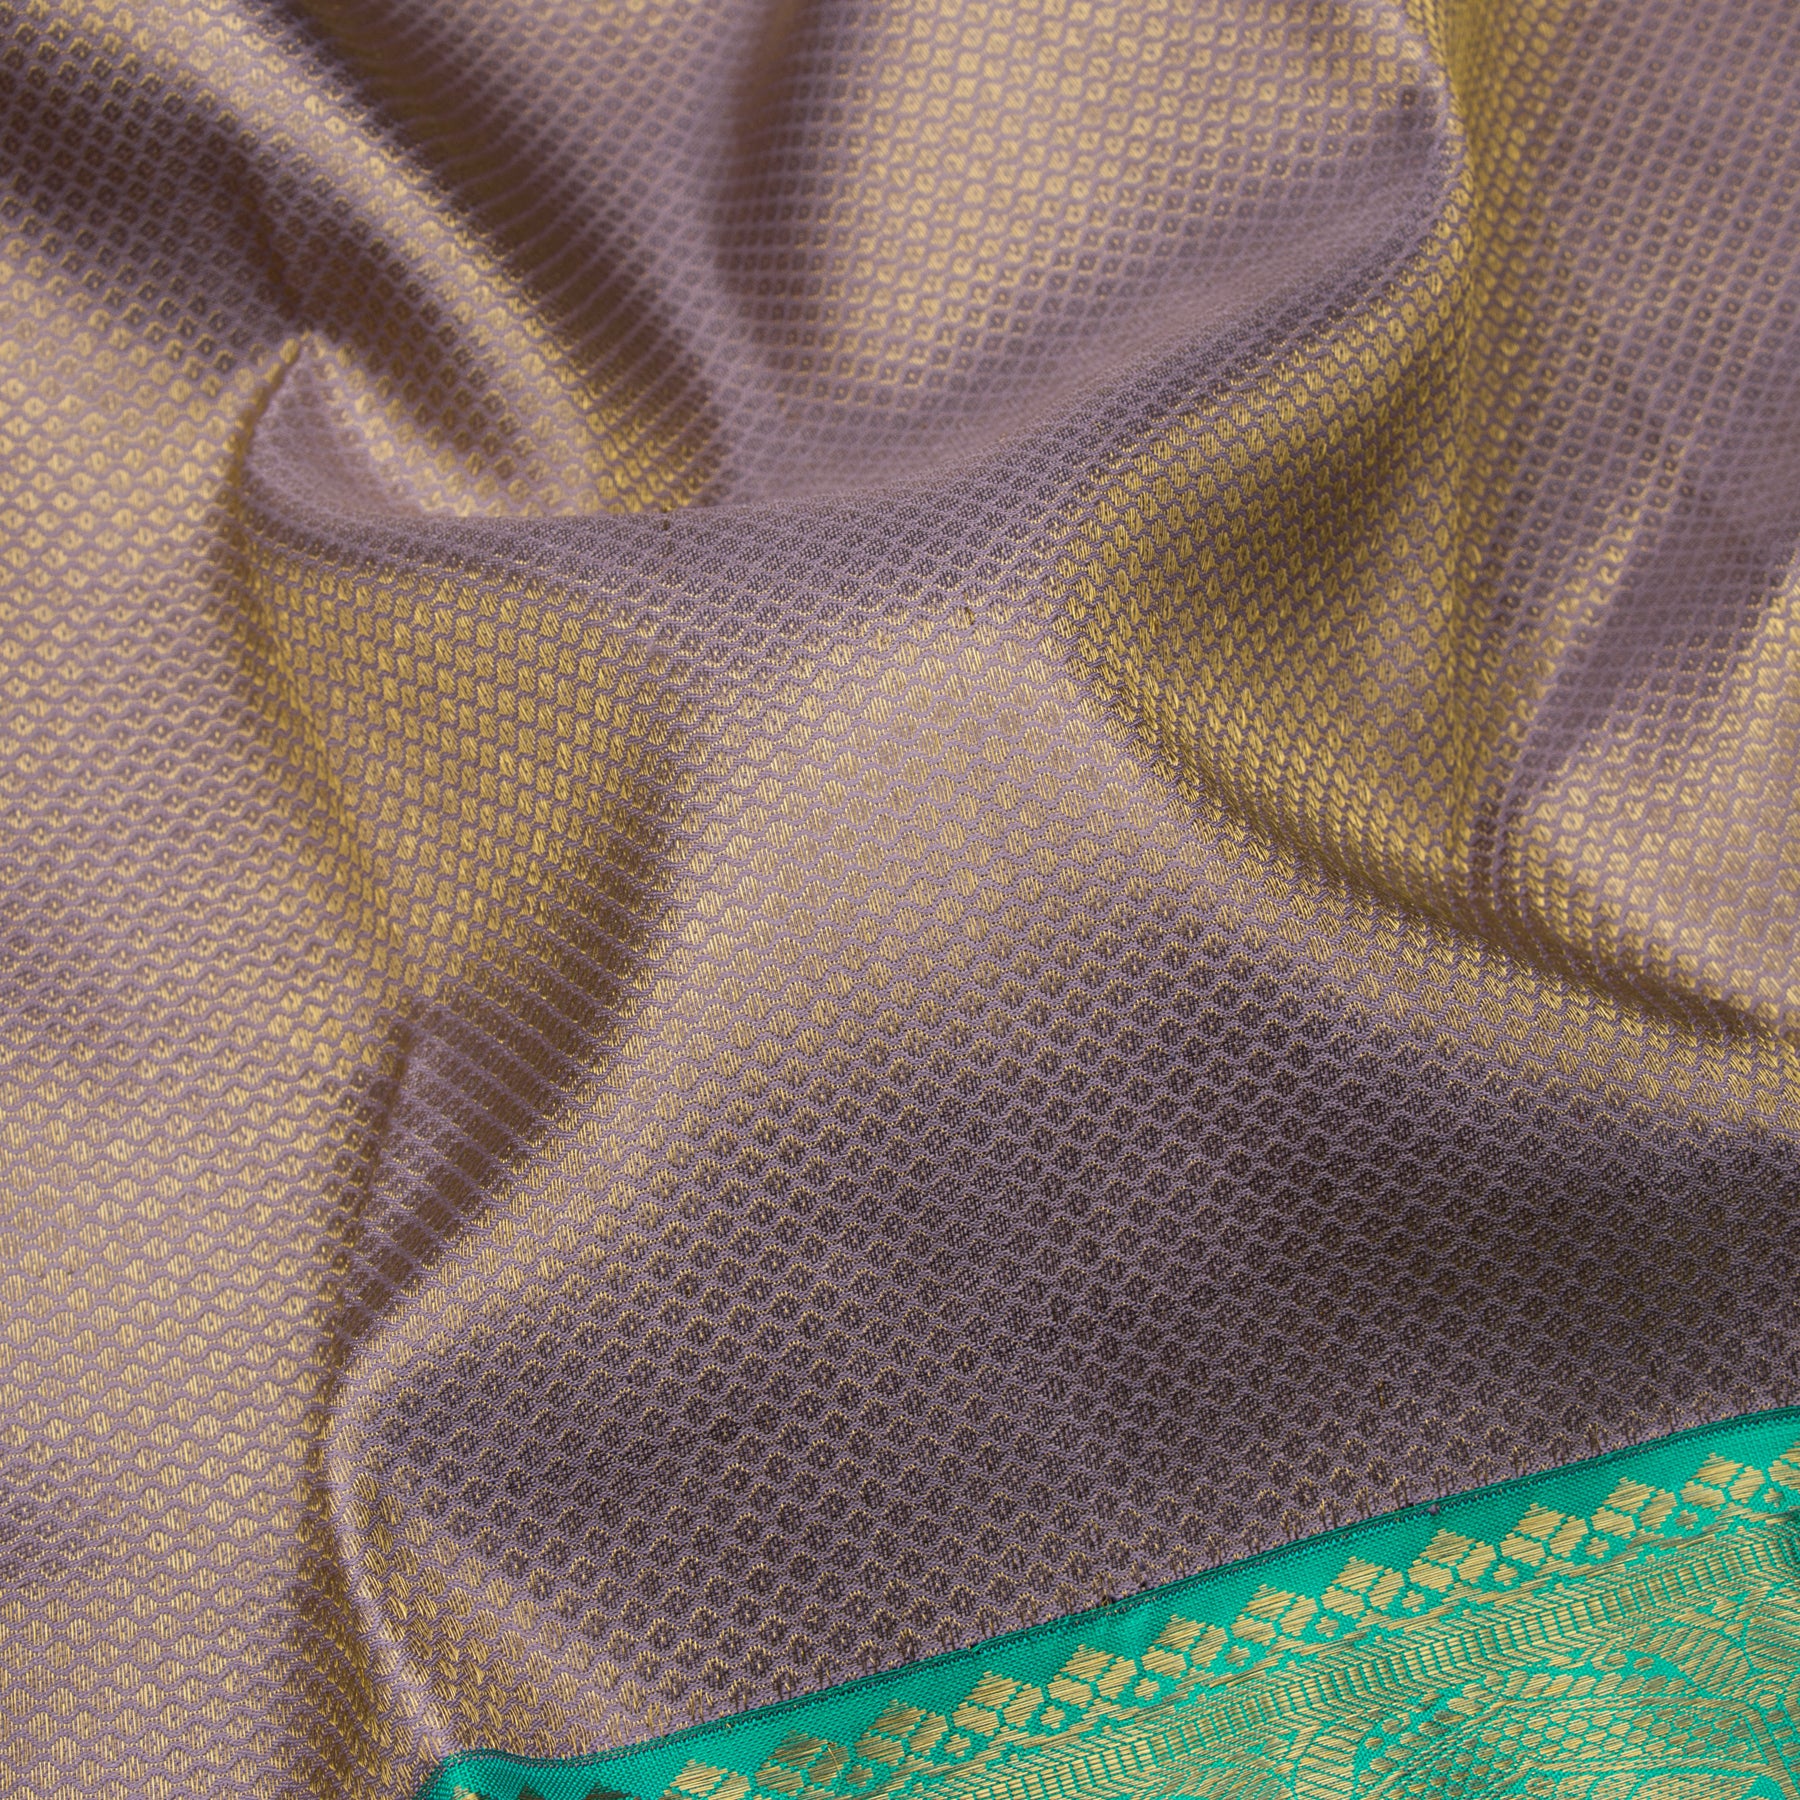 Kanakavalli Kanjivaram Silk Sari 22-110-HS001-08968 - Fabric View